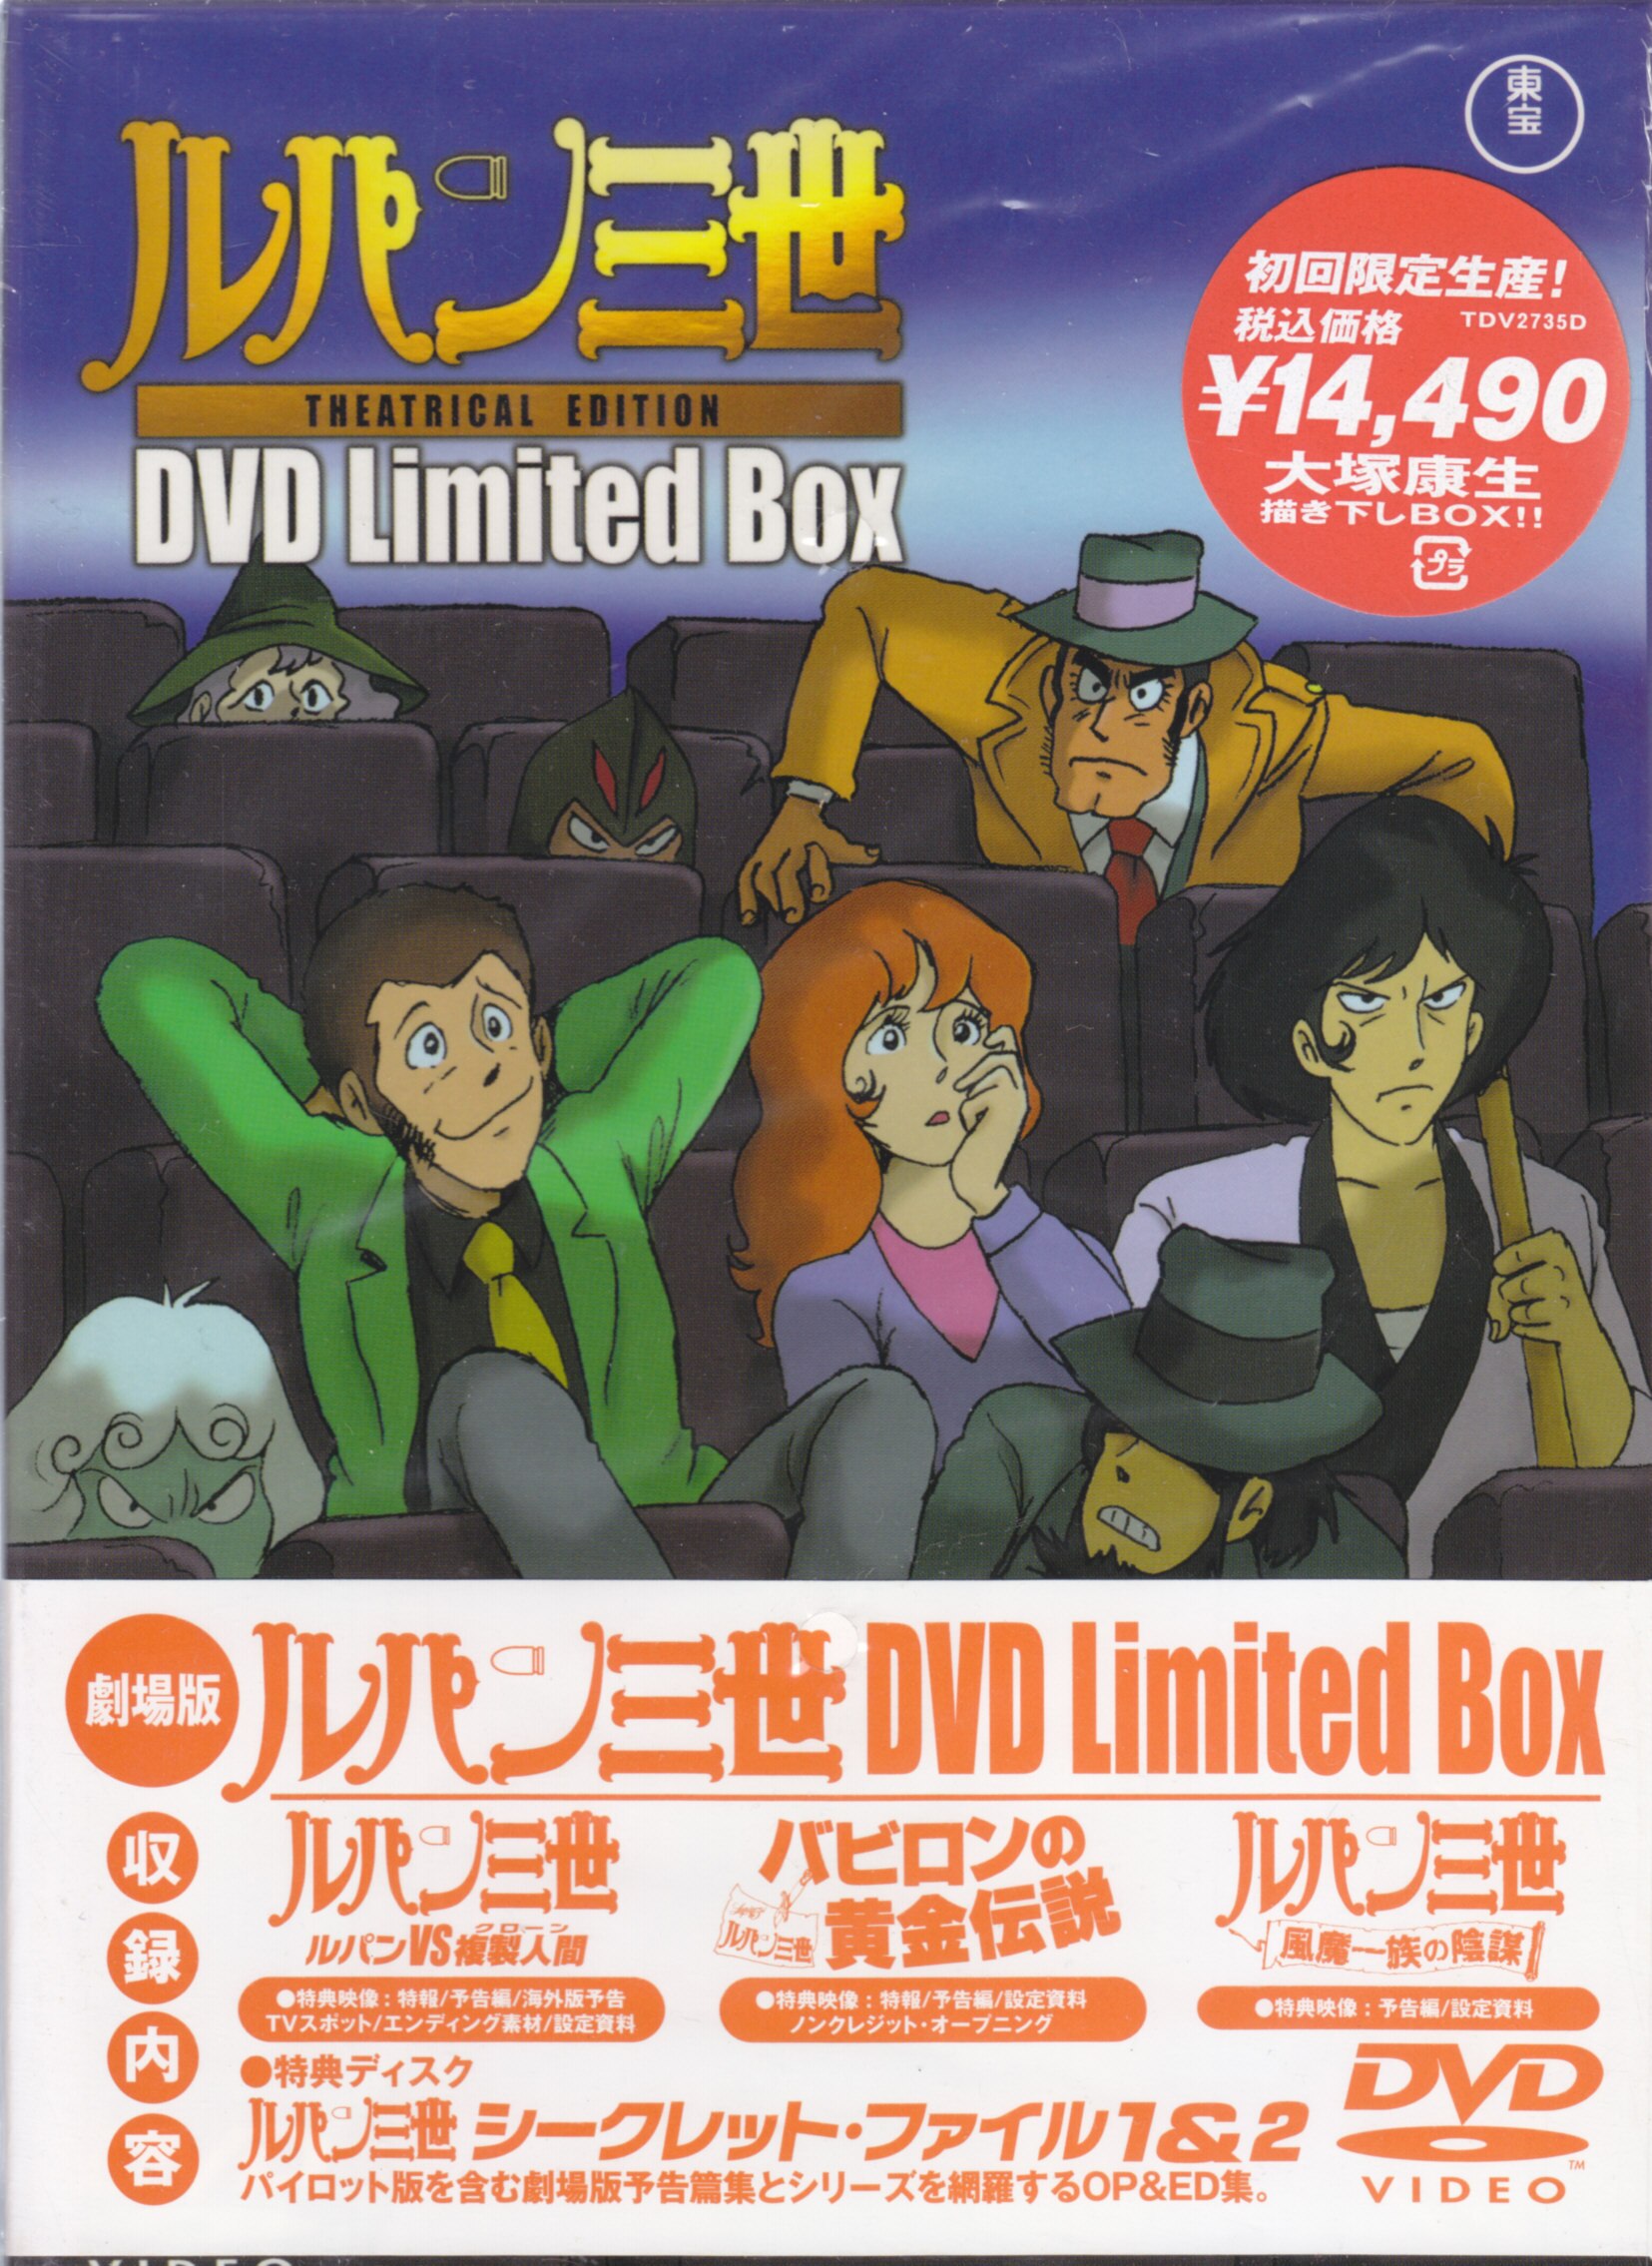 ルパン三世 THEATRICAL EDITION DVD Limited Box